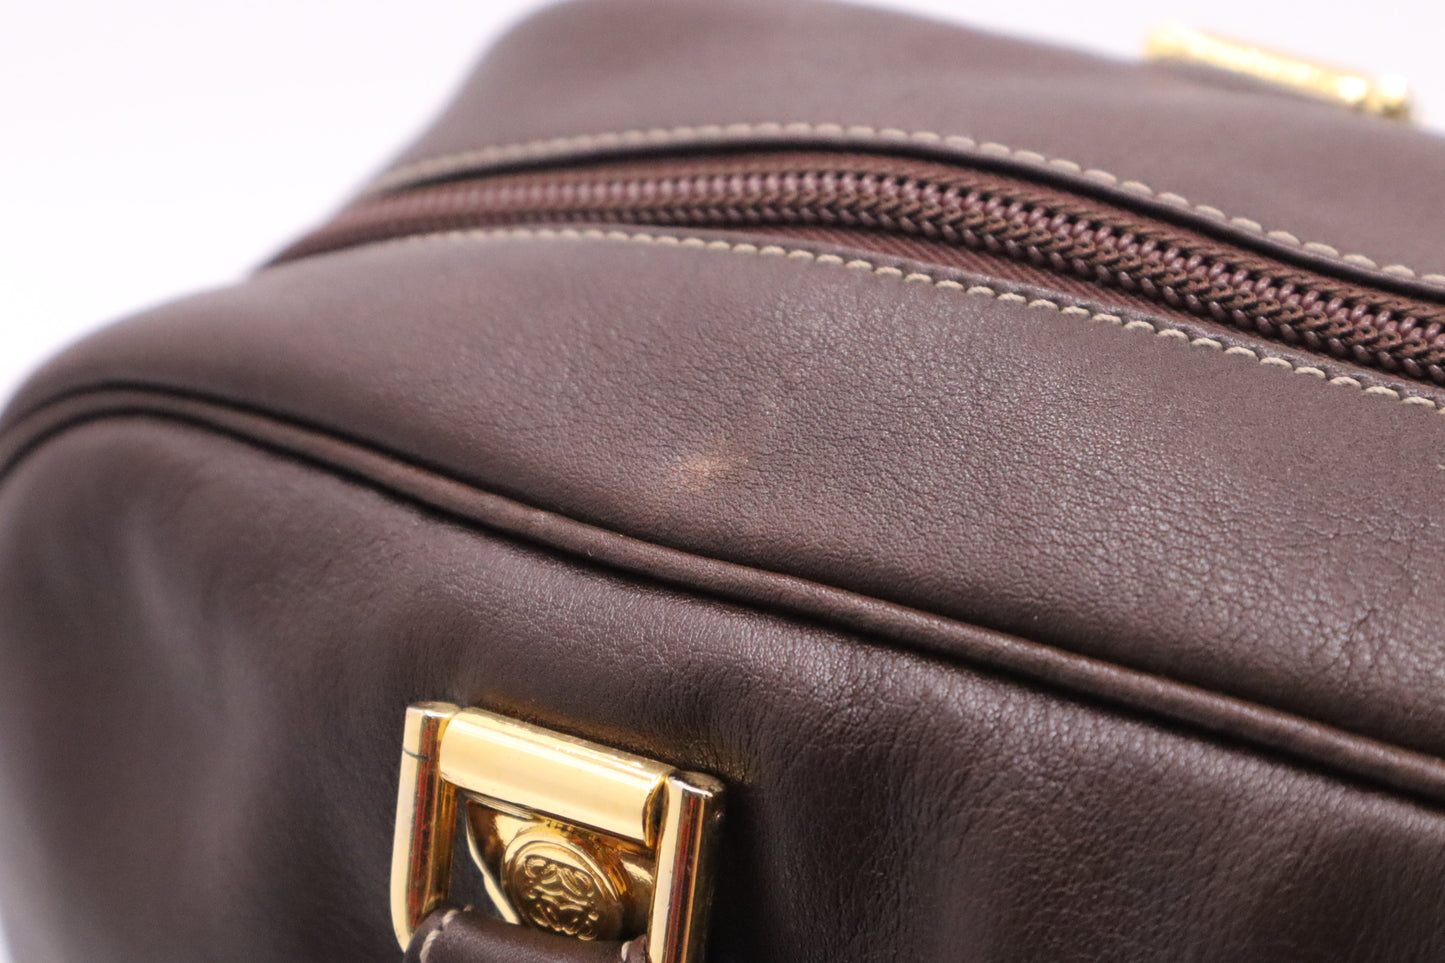 Loewe Bowling Bag in Brown Leather